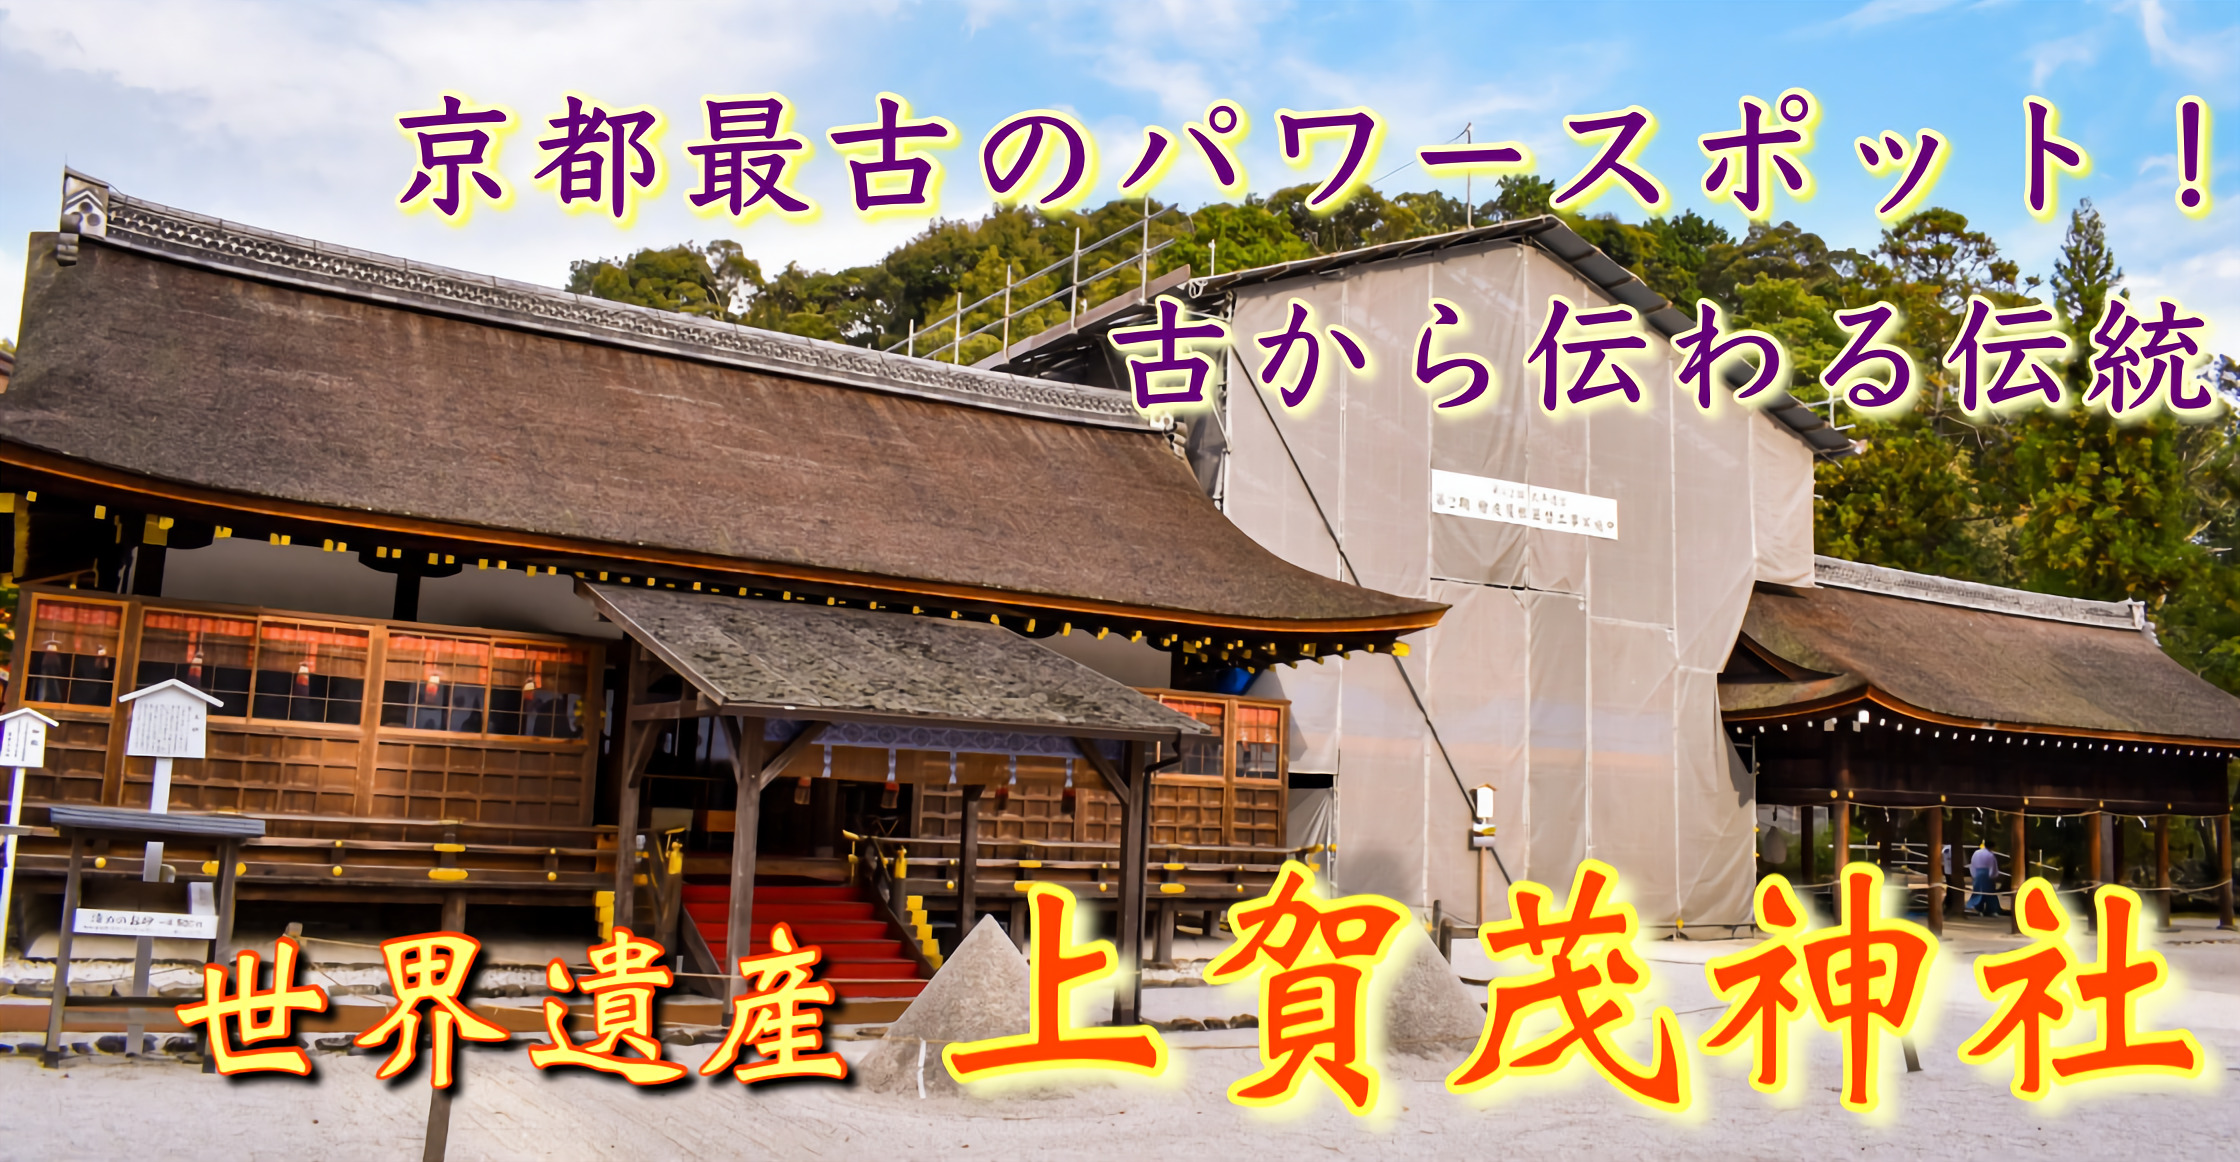 京都旅行21 上賀茂神社の観光案内 京都最古の歴史を誇る最強パワースポット賀茂別雷神社 旅狼 たびろう どっとこむ